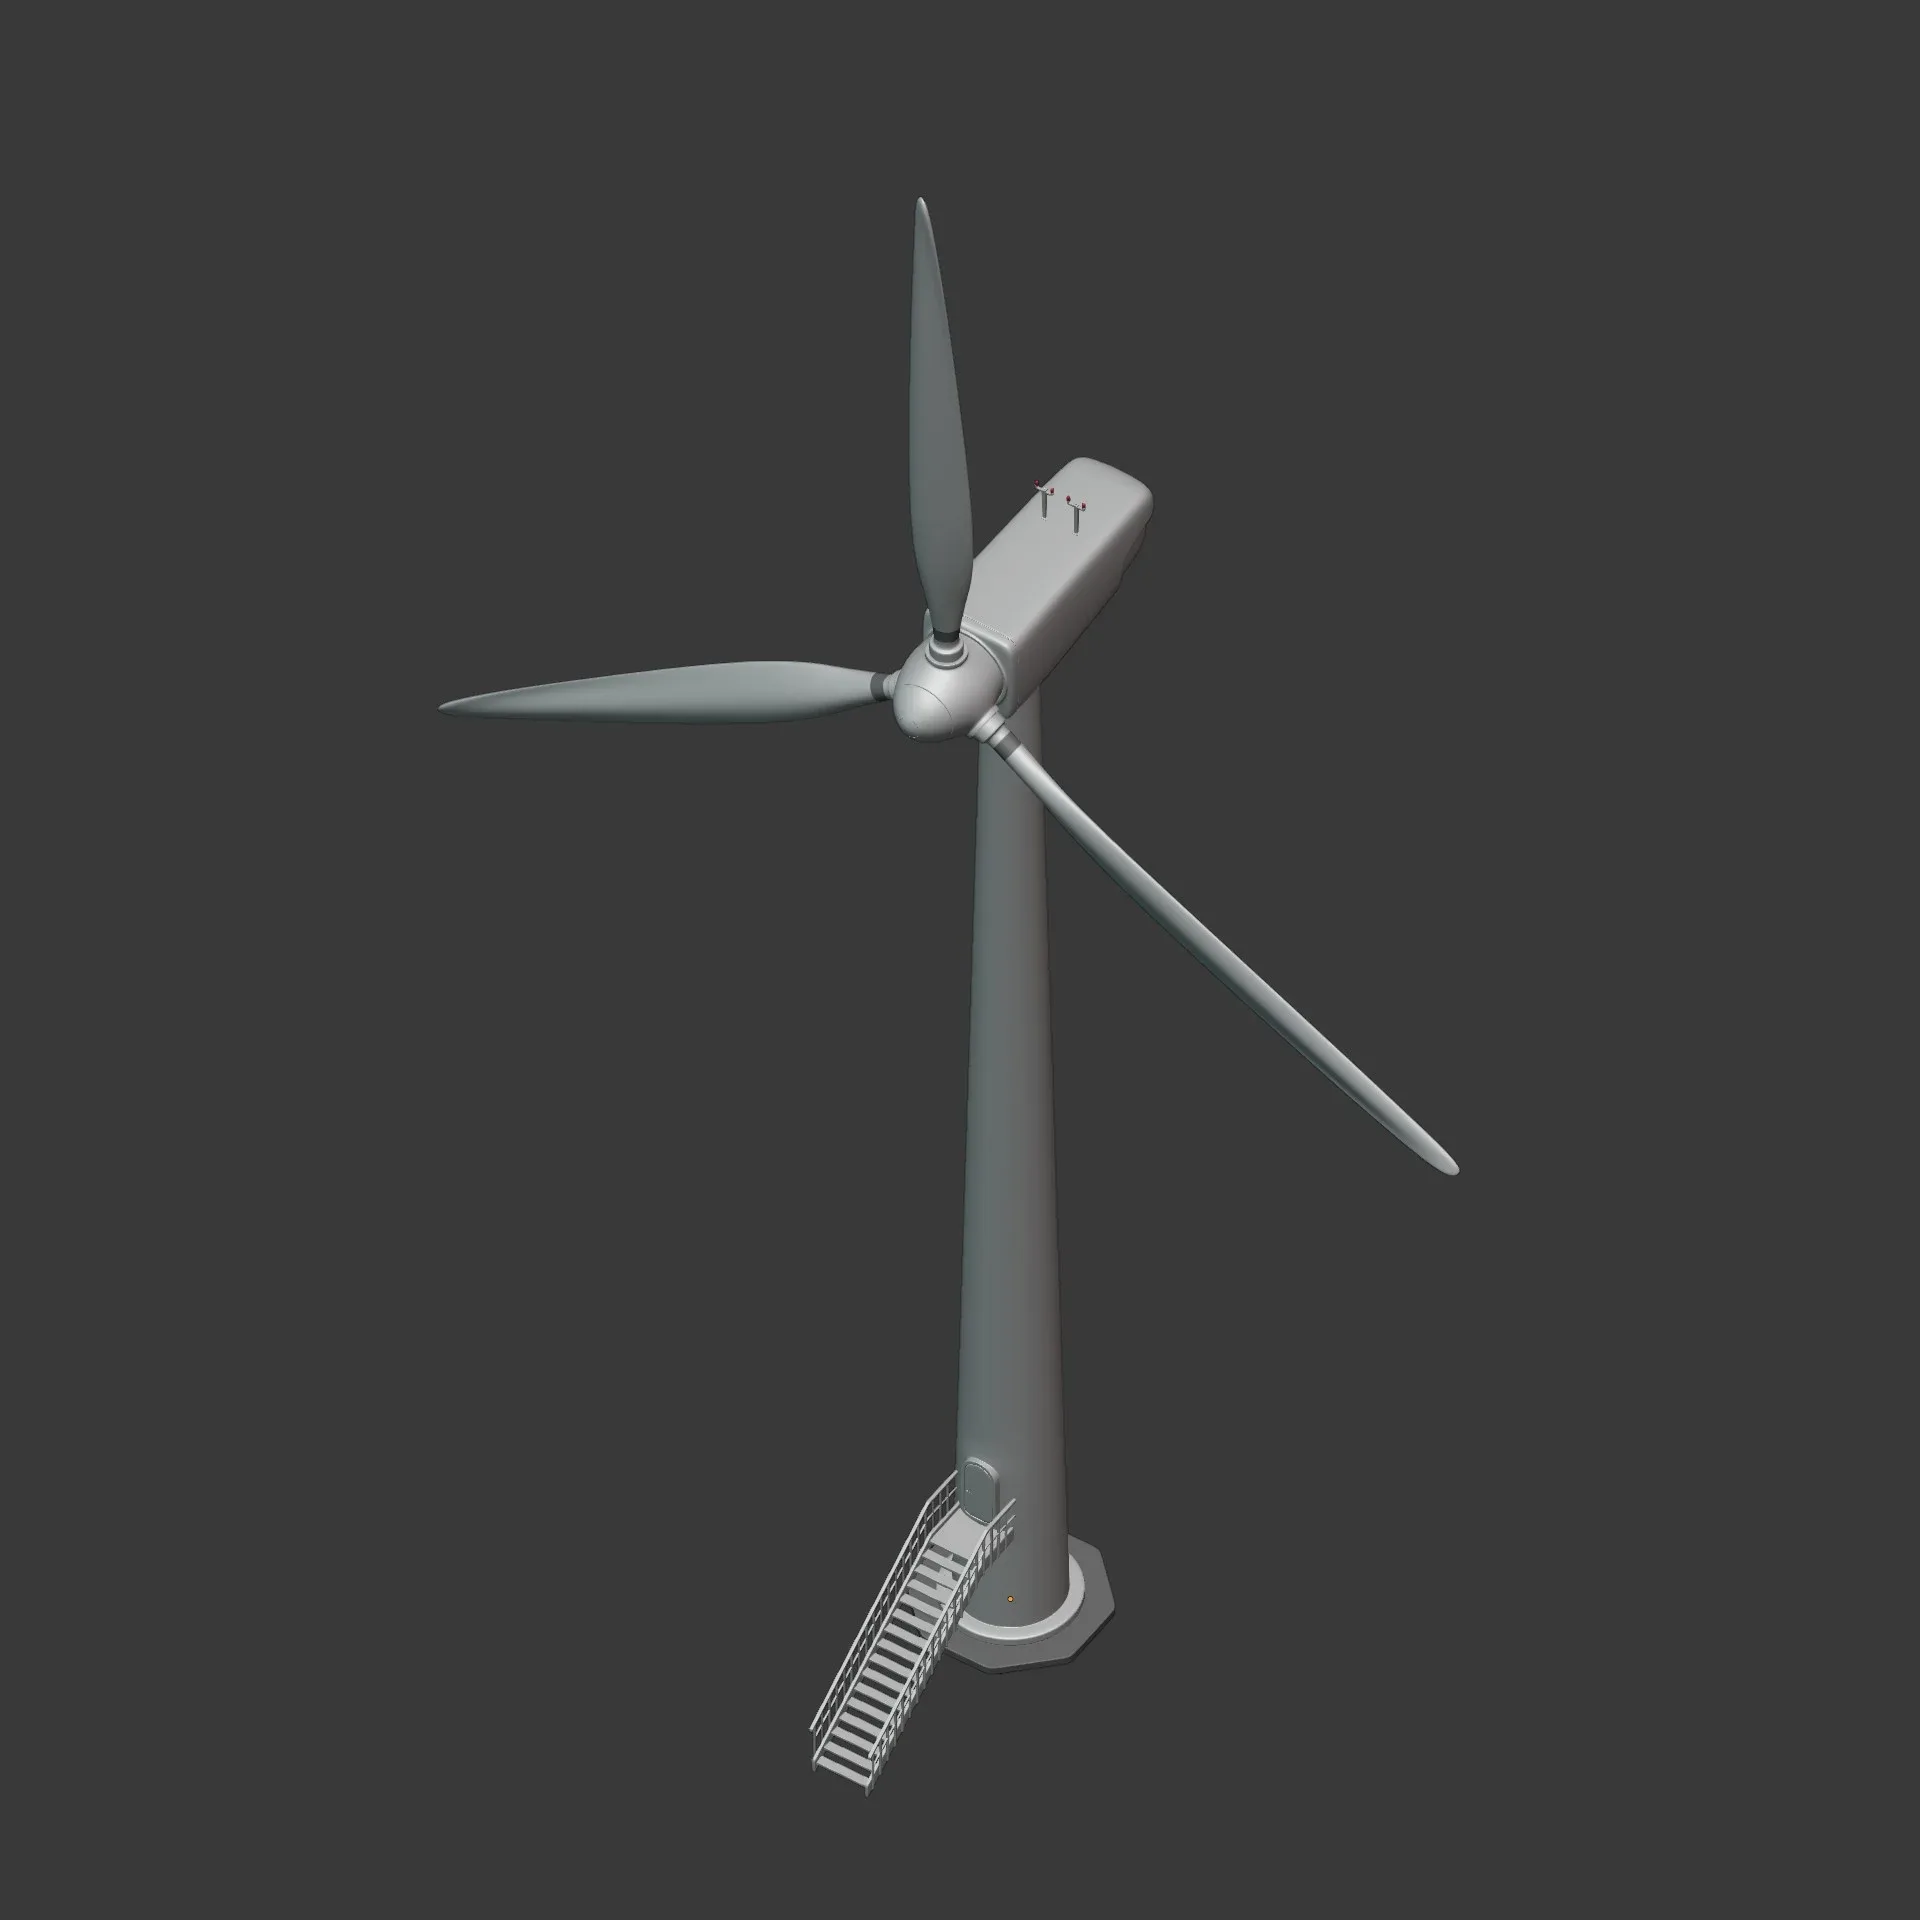 Wind Turbine